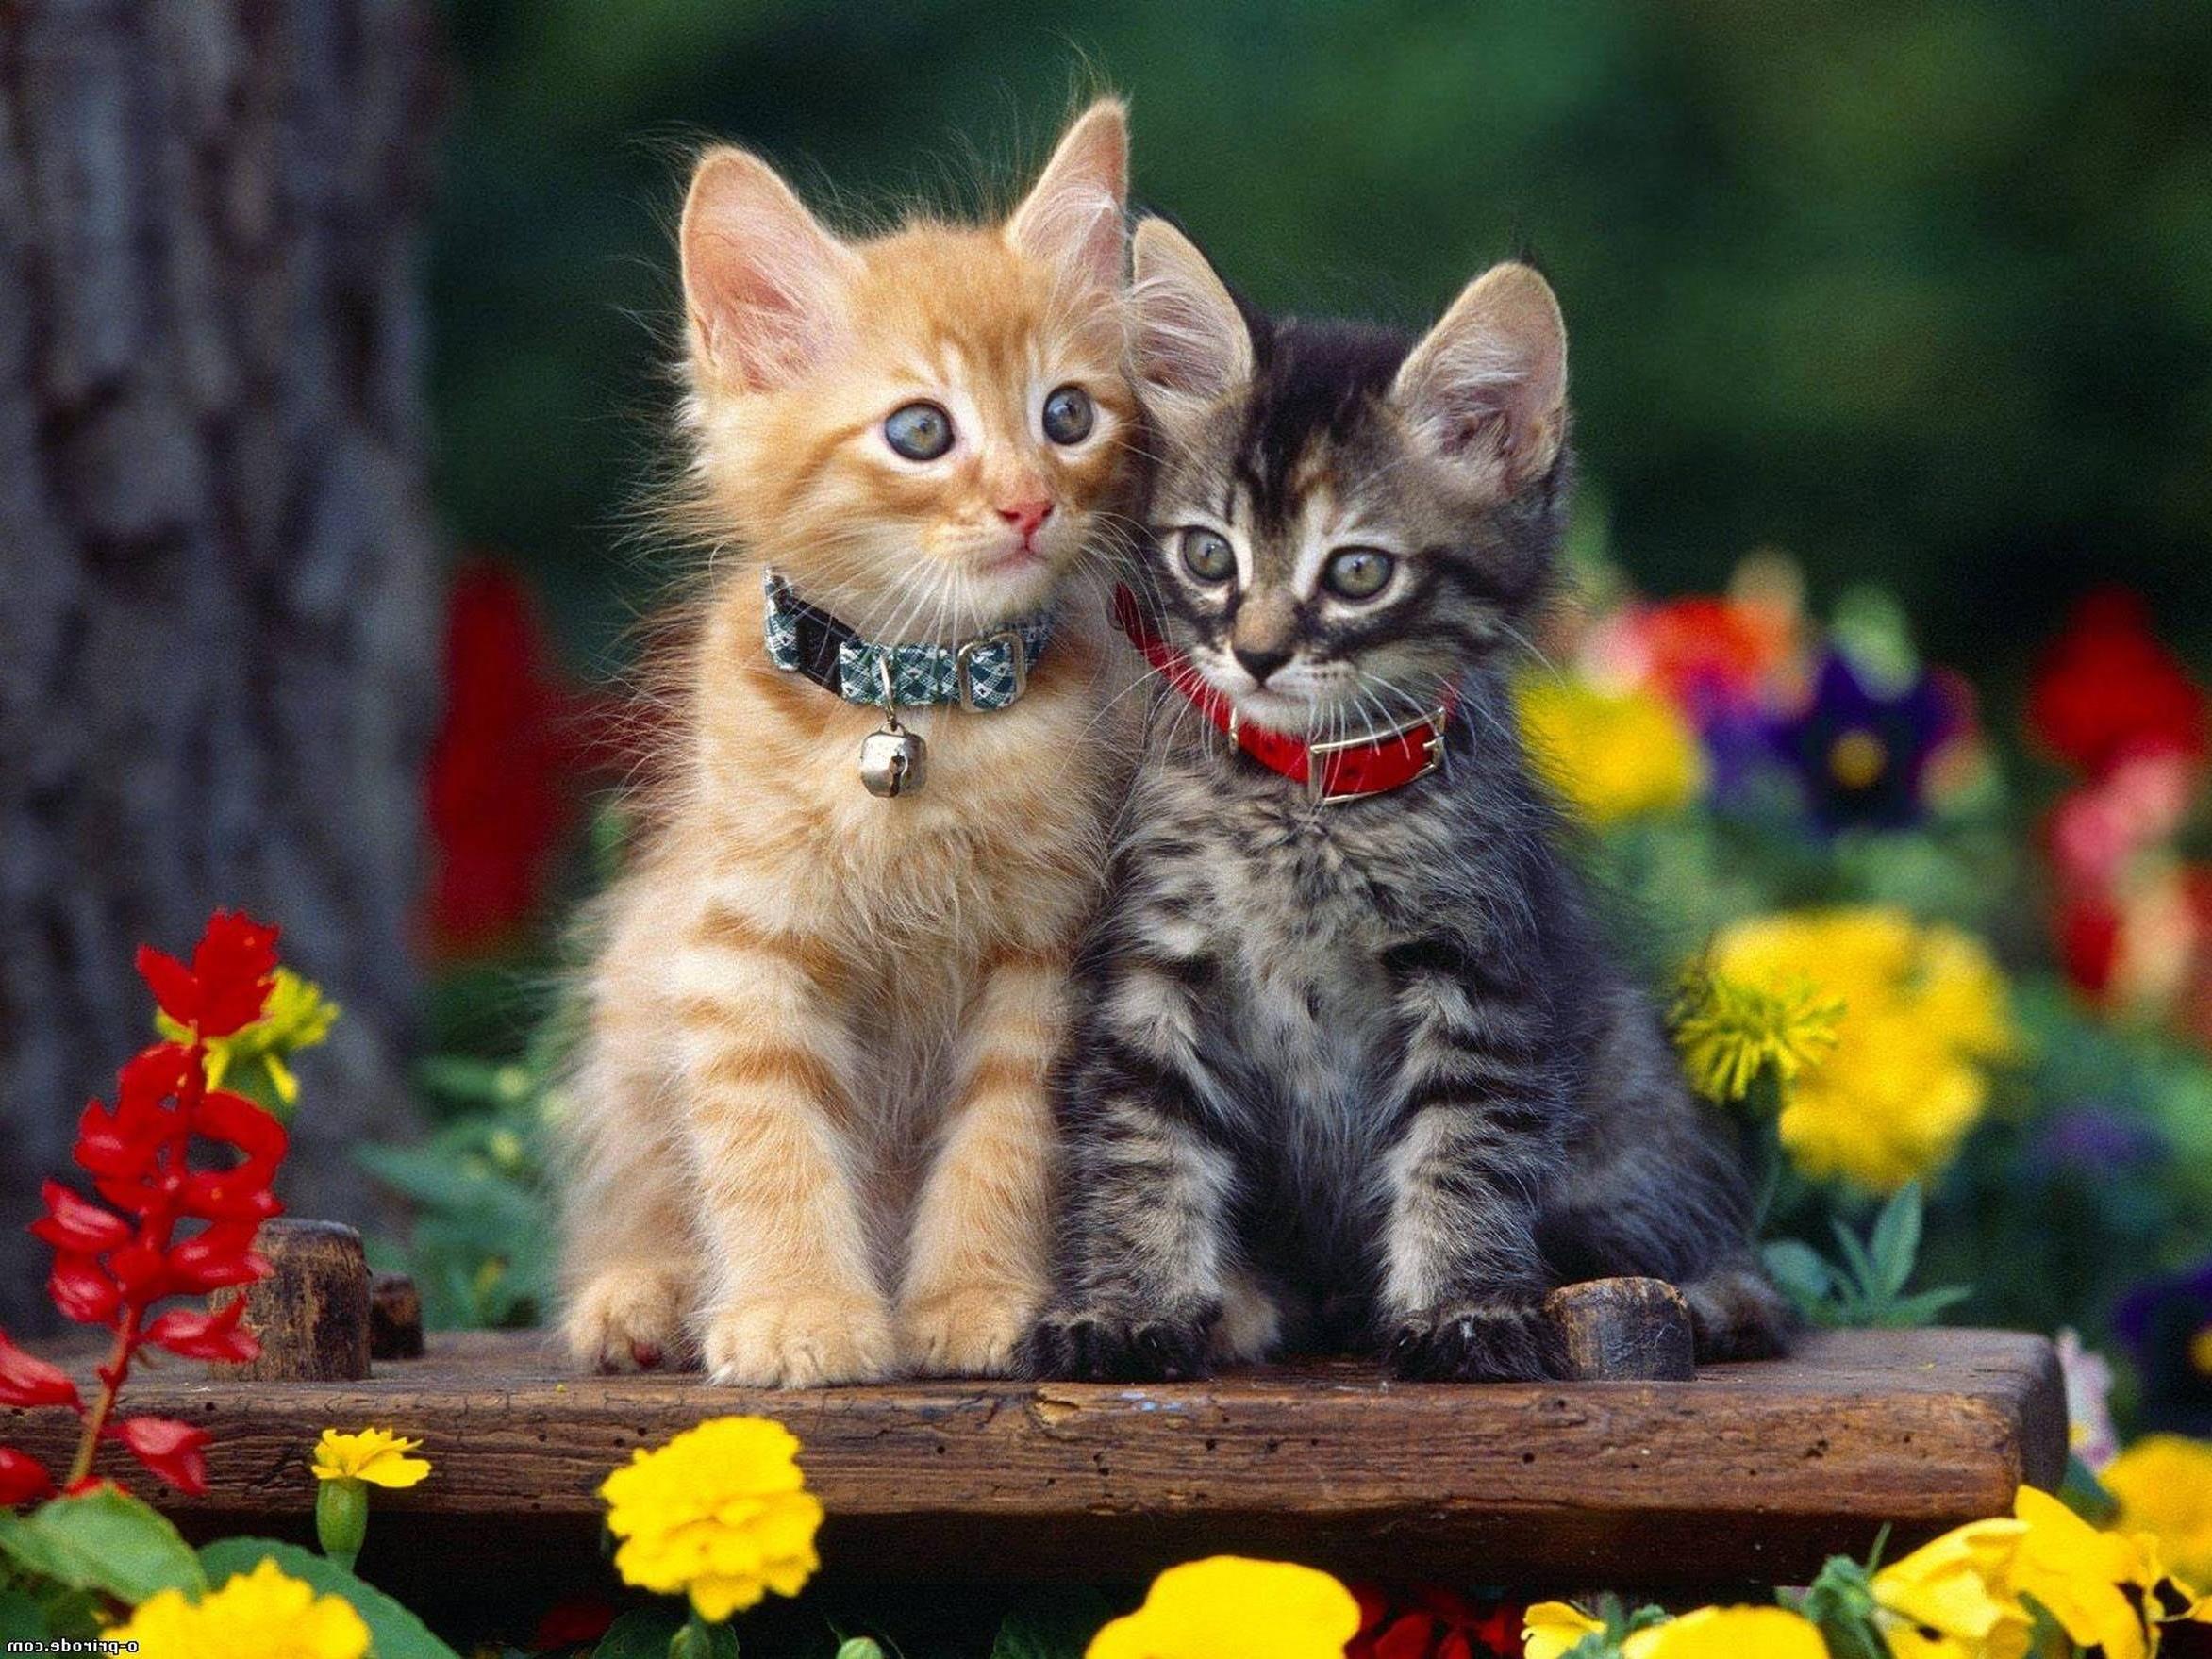 Hình ảnh đẹp giữa 2 chú mèo con thật đẹp đúng không nào